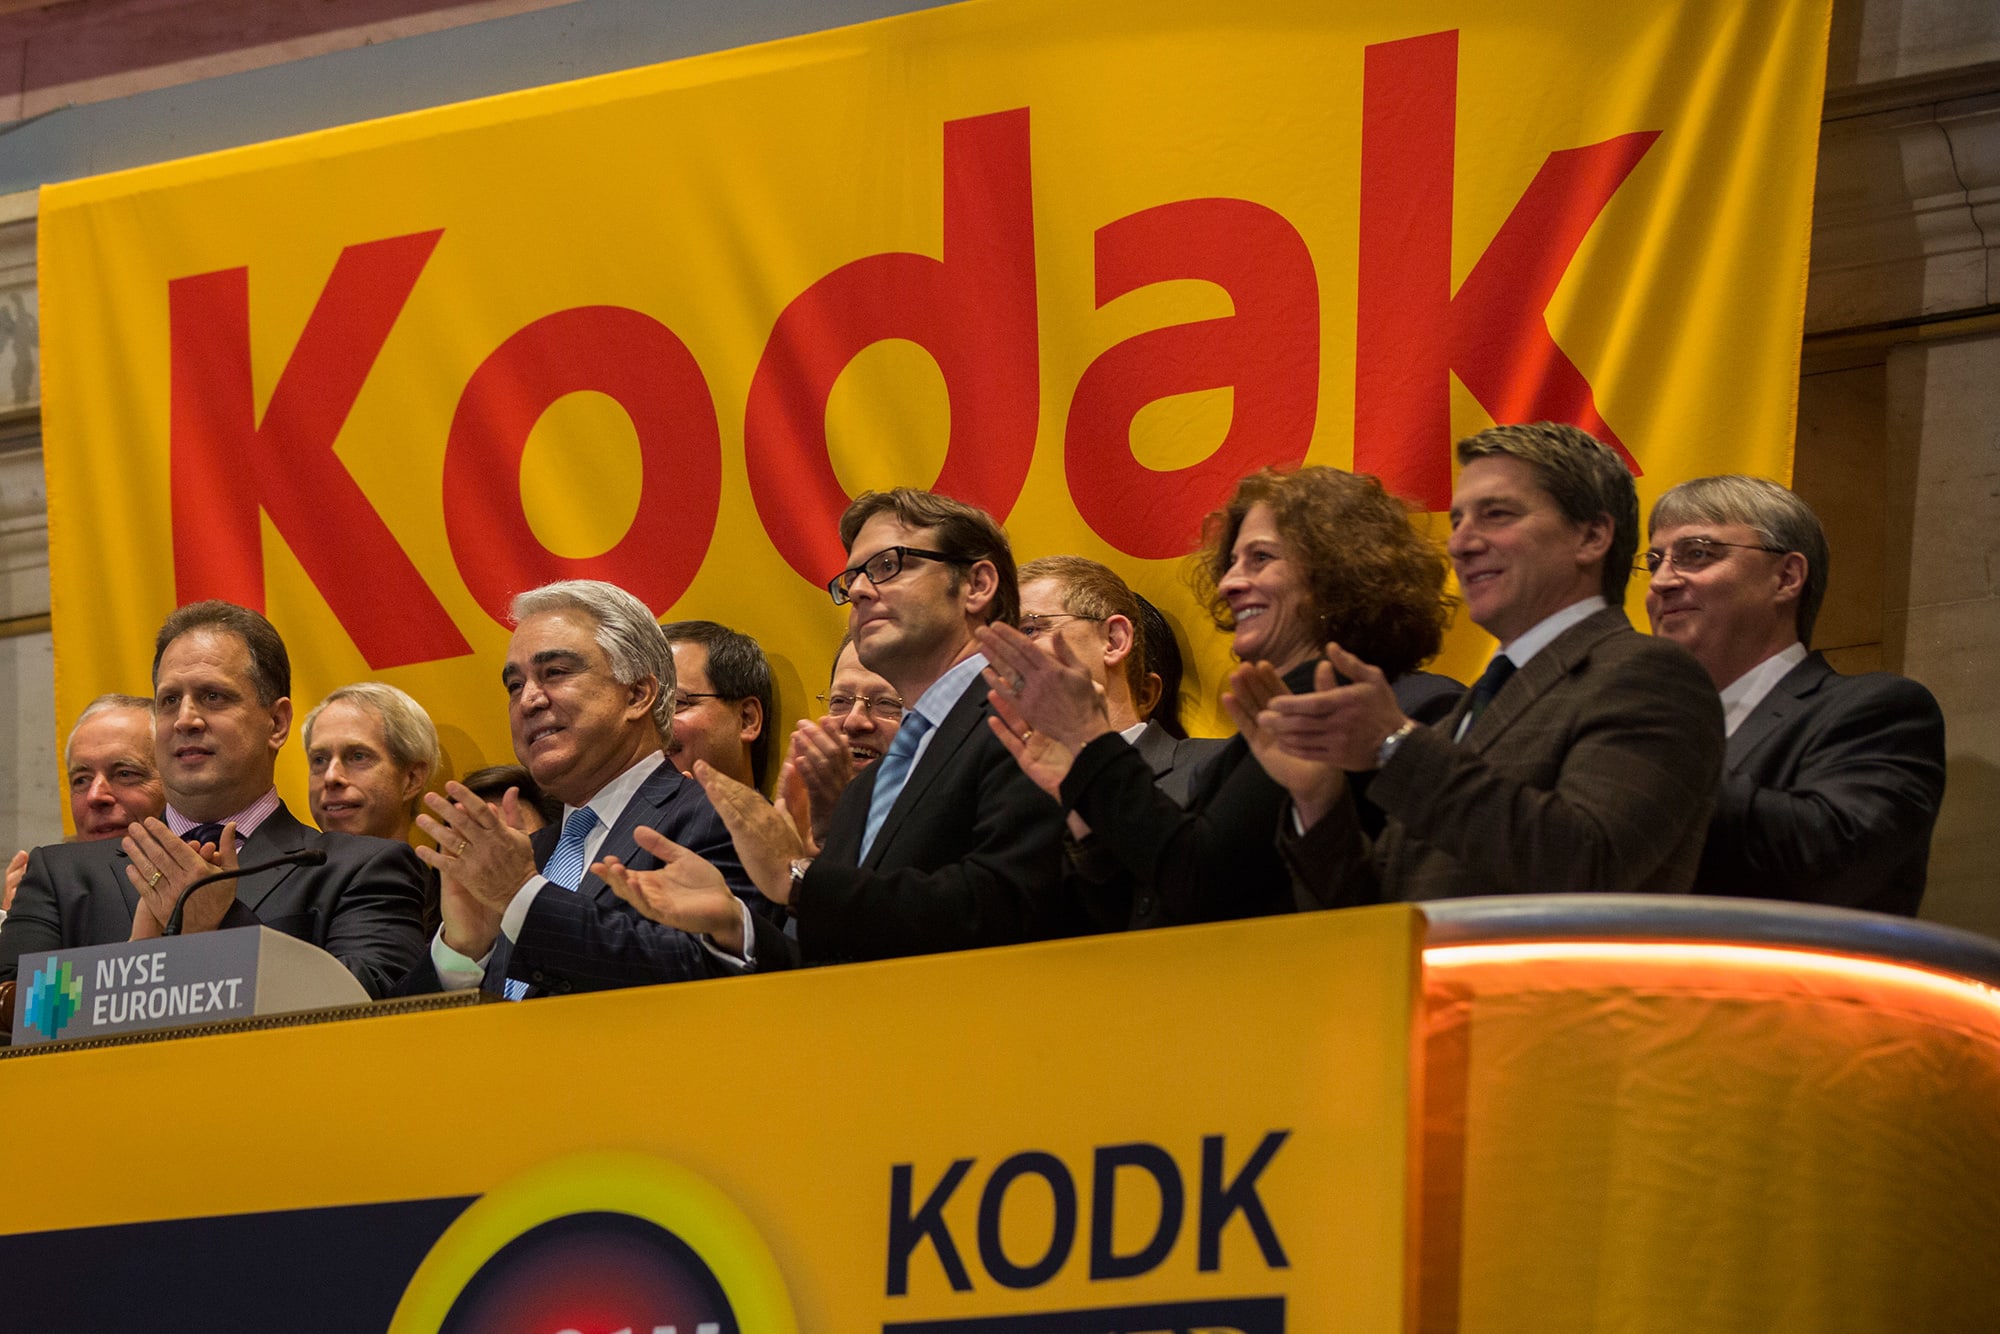 Adapt or Die | The Fall of Kodak